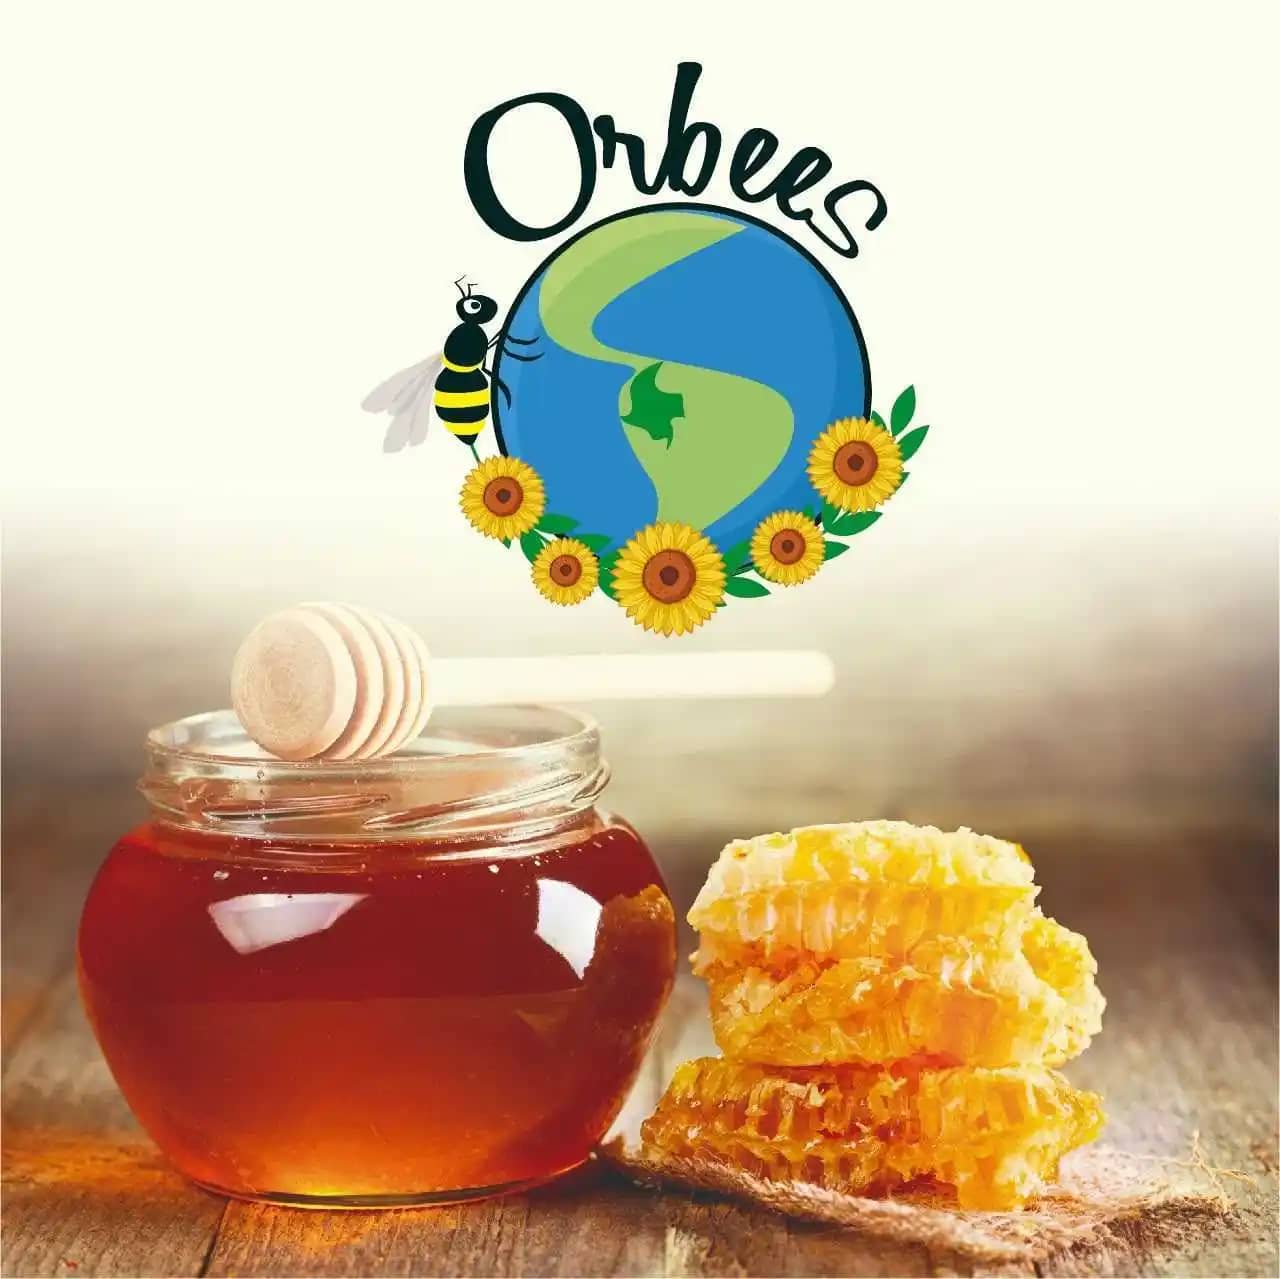 Venta de miel de abeja Dana Lizarralde 300 gr